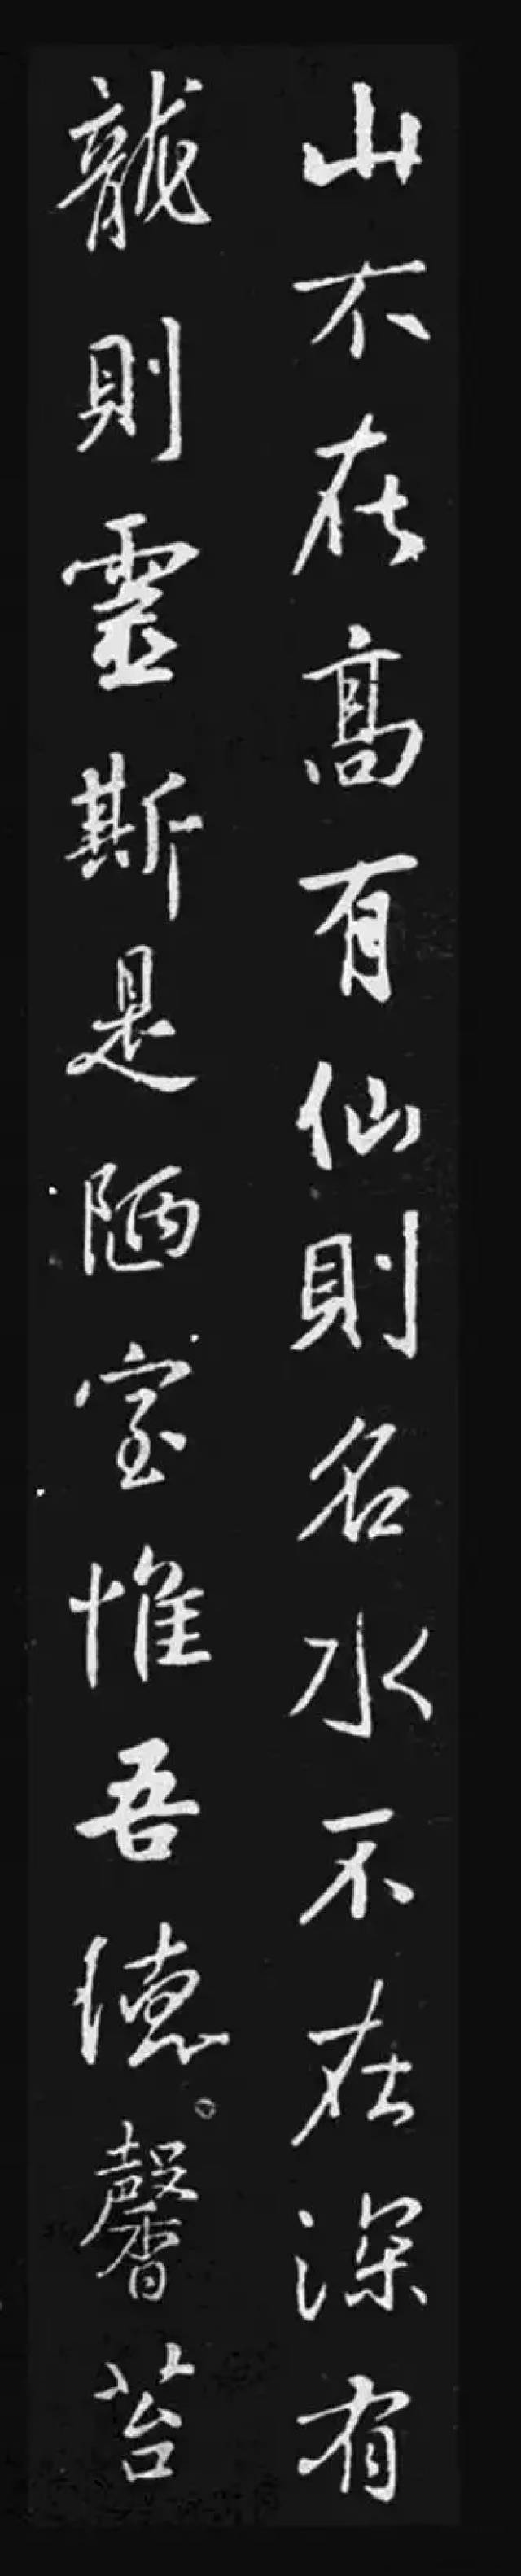 文徵明,赵孟頫,王羲之笔下的行书《陋室铭》